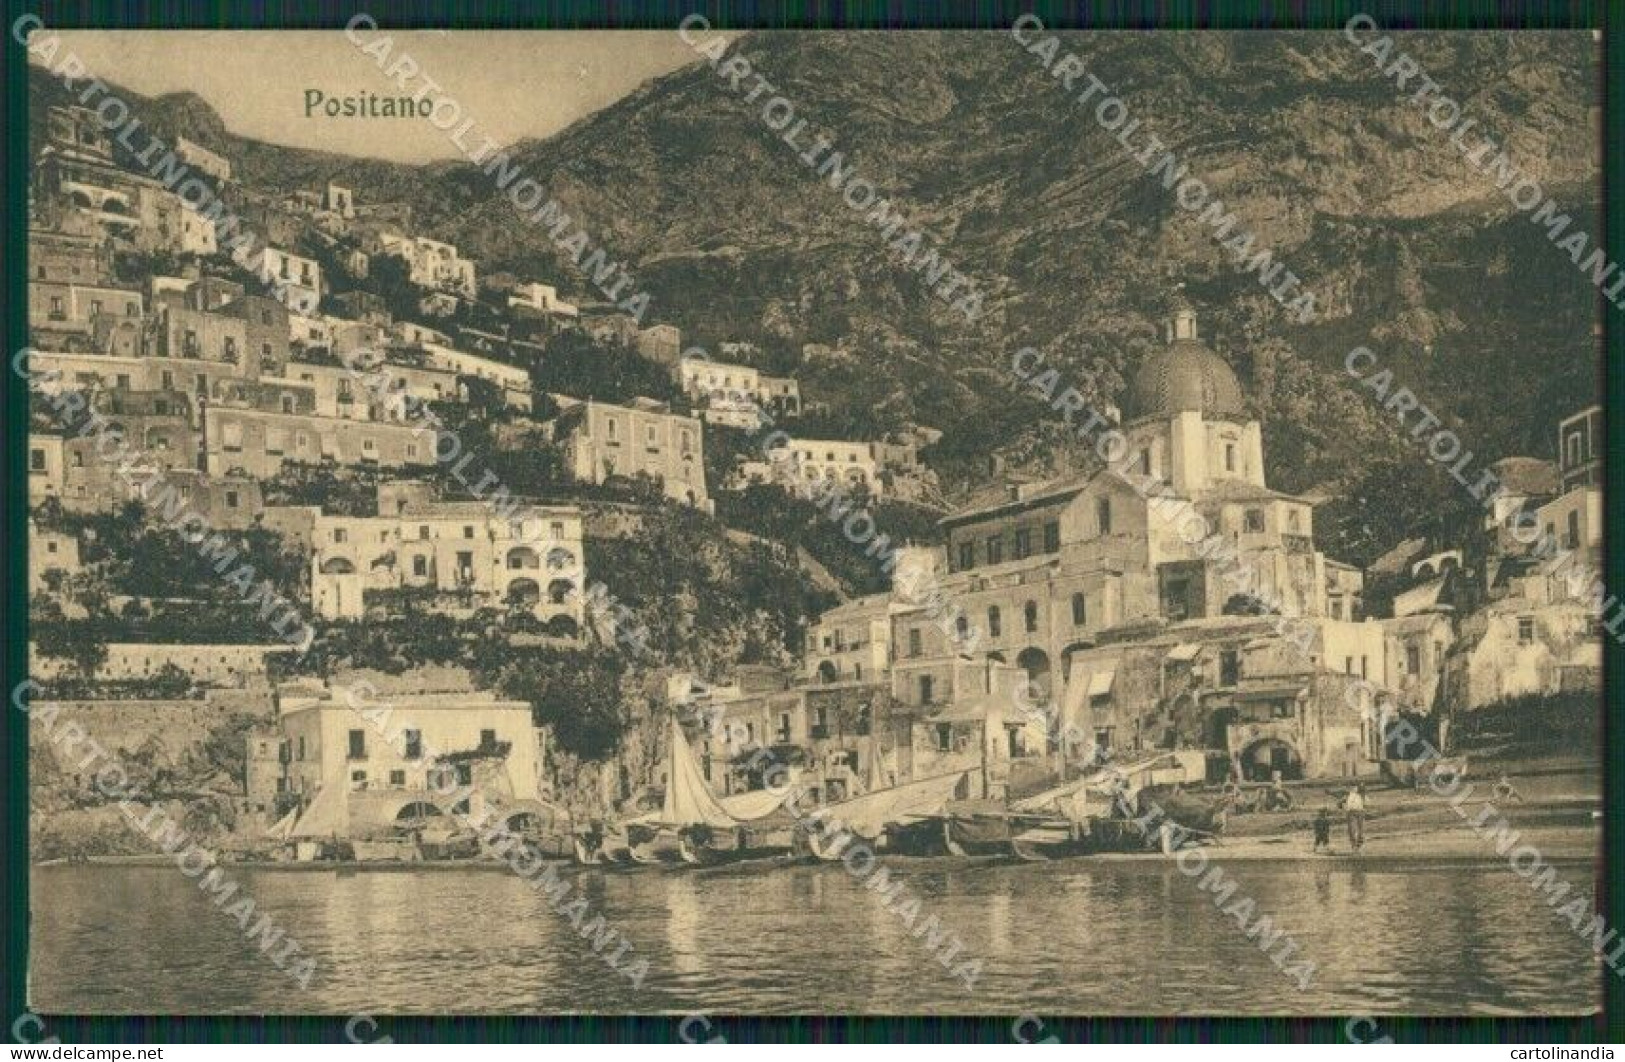 Salerno Positano Cartolina KV3369 - Salerno